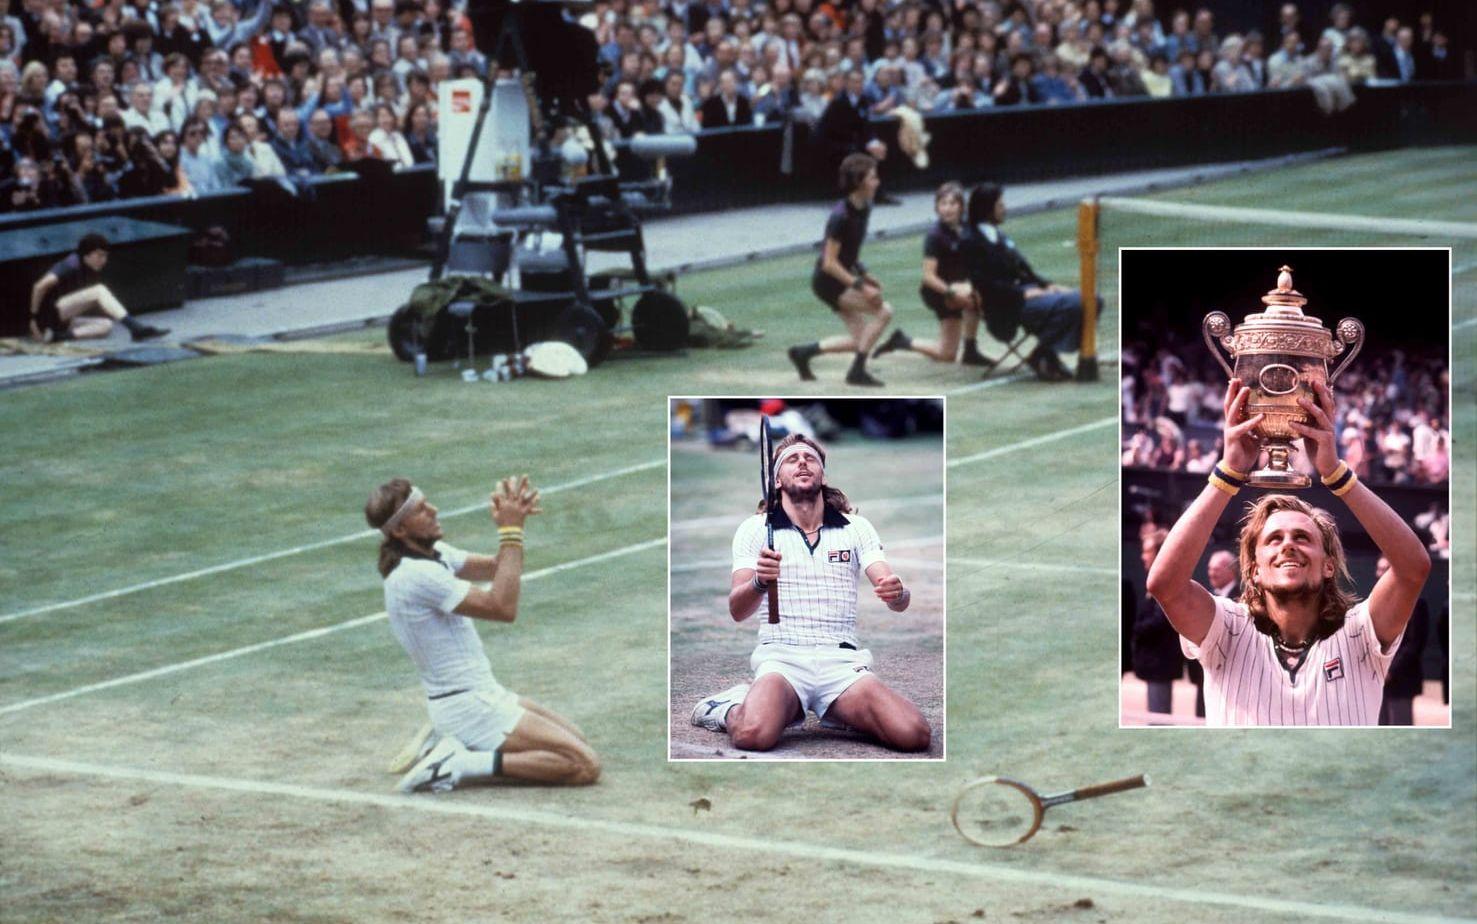 Björn Borg vann fem raka Wimbledon-titlar åren 1976-1980. Segerreceptet för de fem triumferna i London: att låta skägget växa och spela i nästintill identiska randiga tröjor, från en av tennisstjärnans sponsorer. Foto: TT